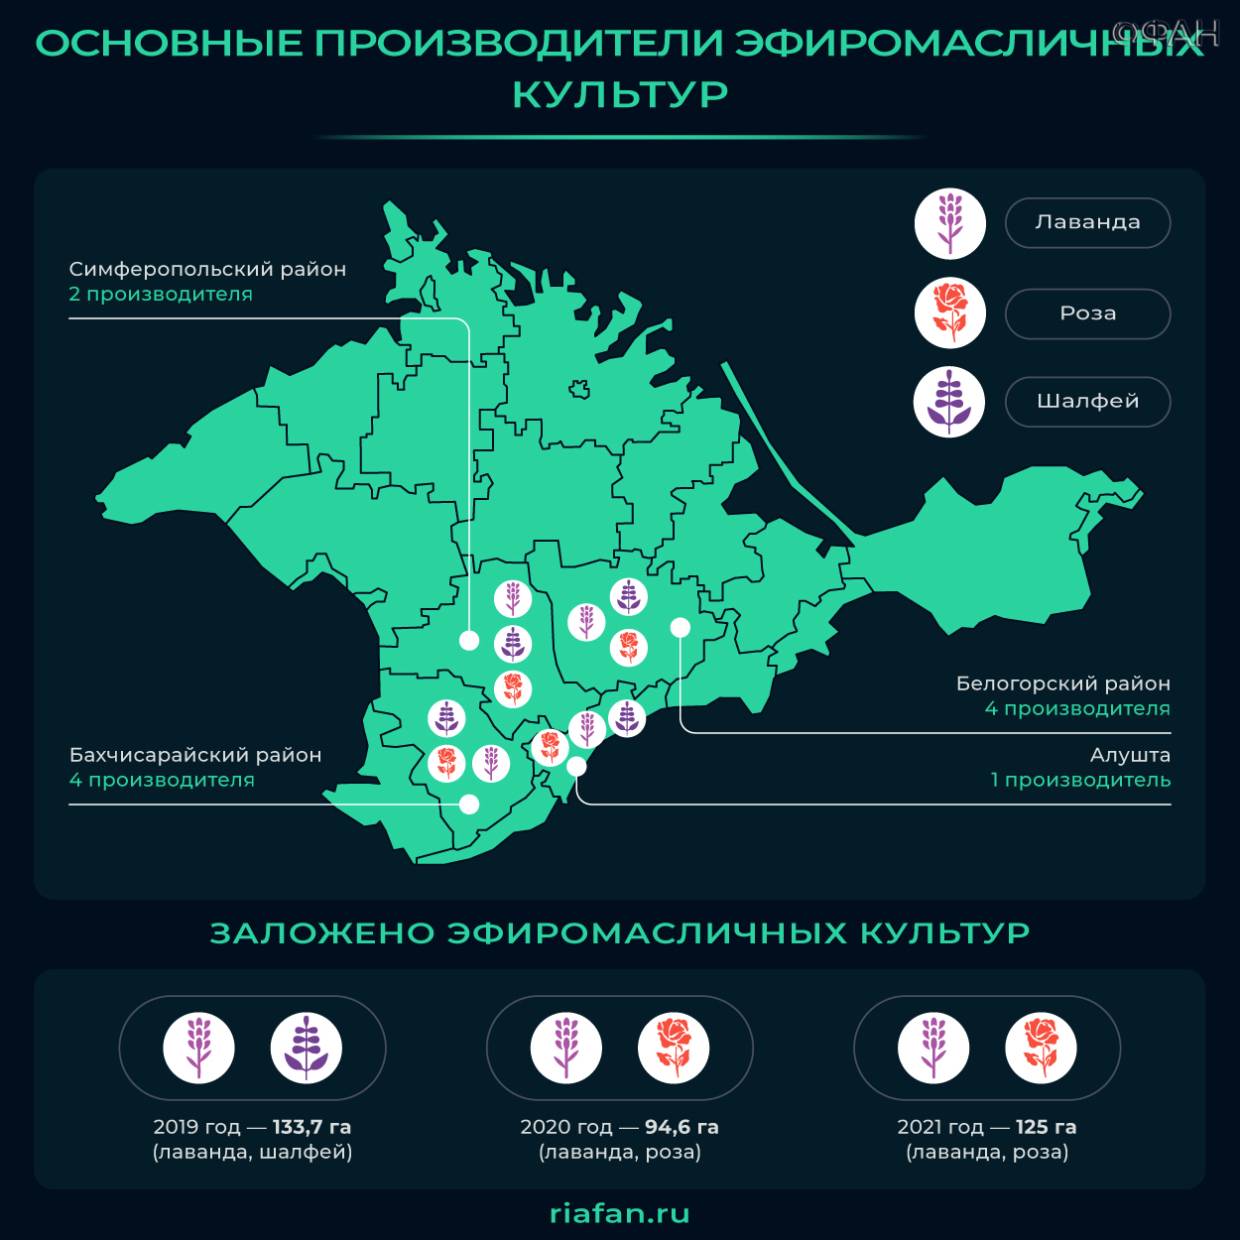 Развитие животноводства, виноградарства и эфиромасличной отрасли: каких рекордов достиг Крым в 2021-м